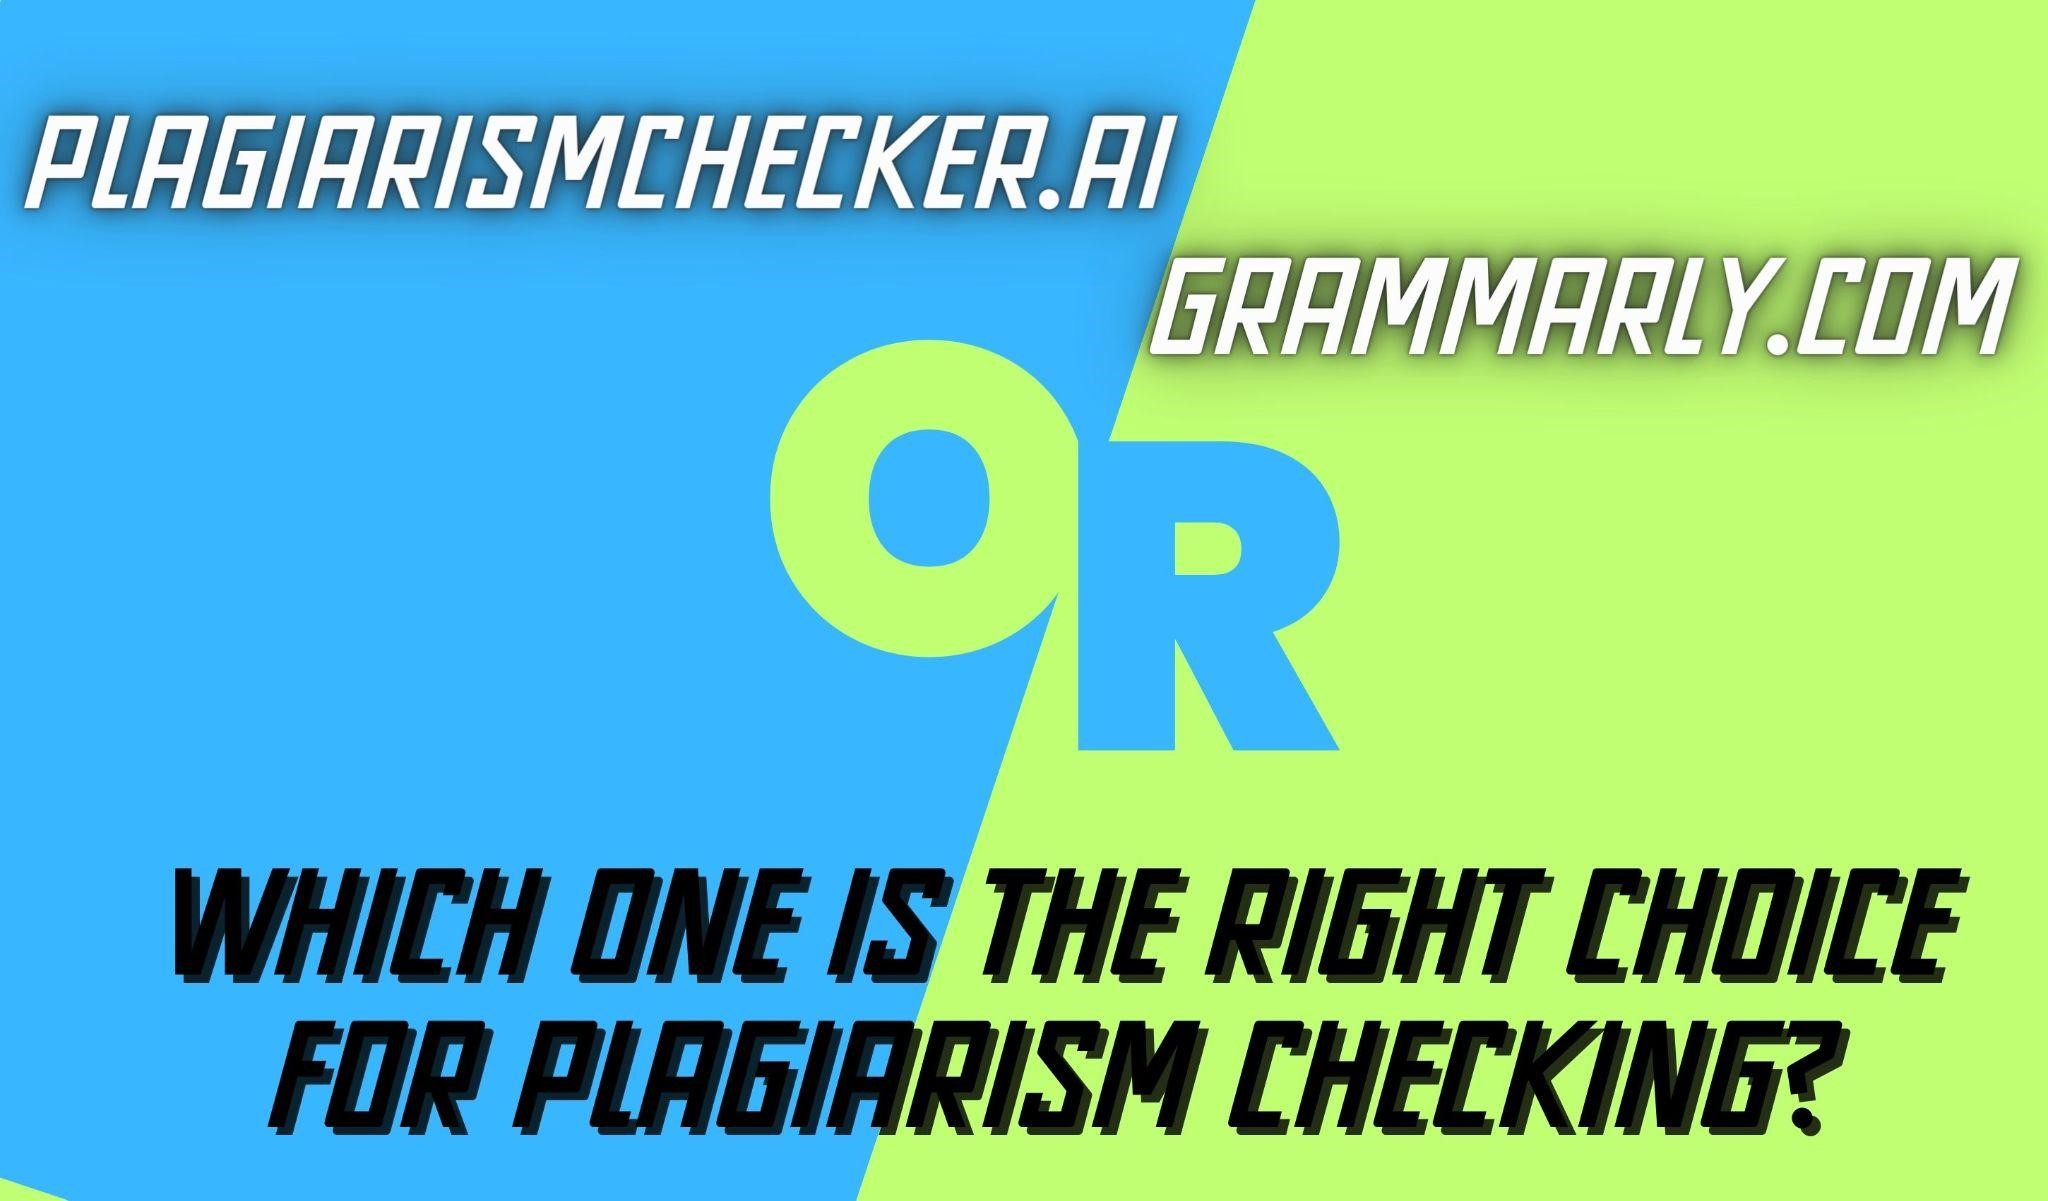 Grammarly vs. Plagiarism Checker.ai